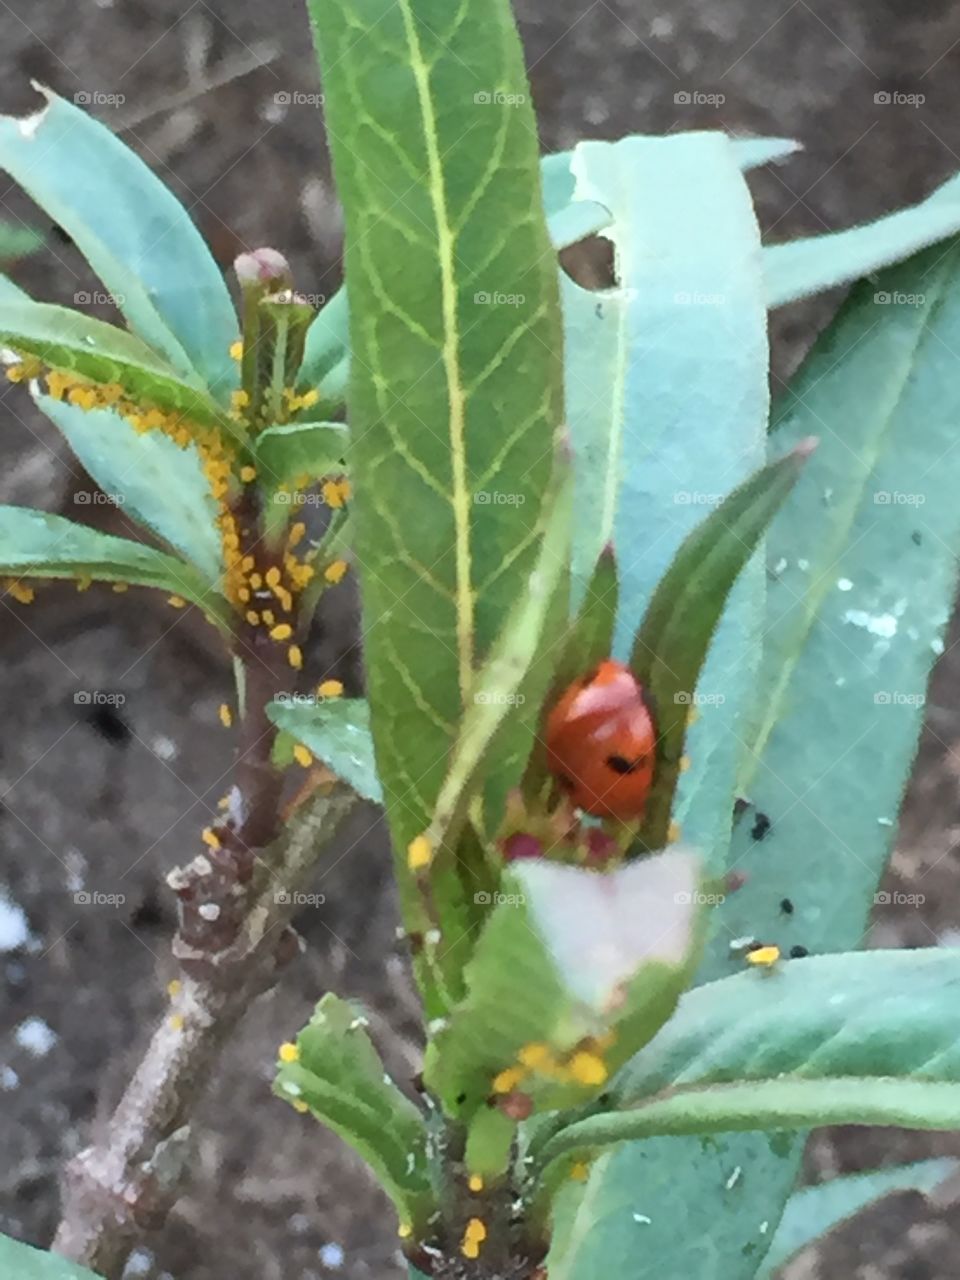 Ladybug lunch time 